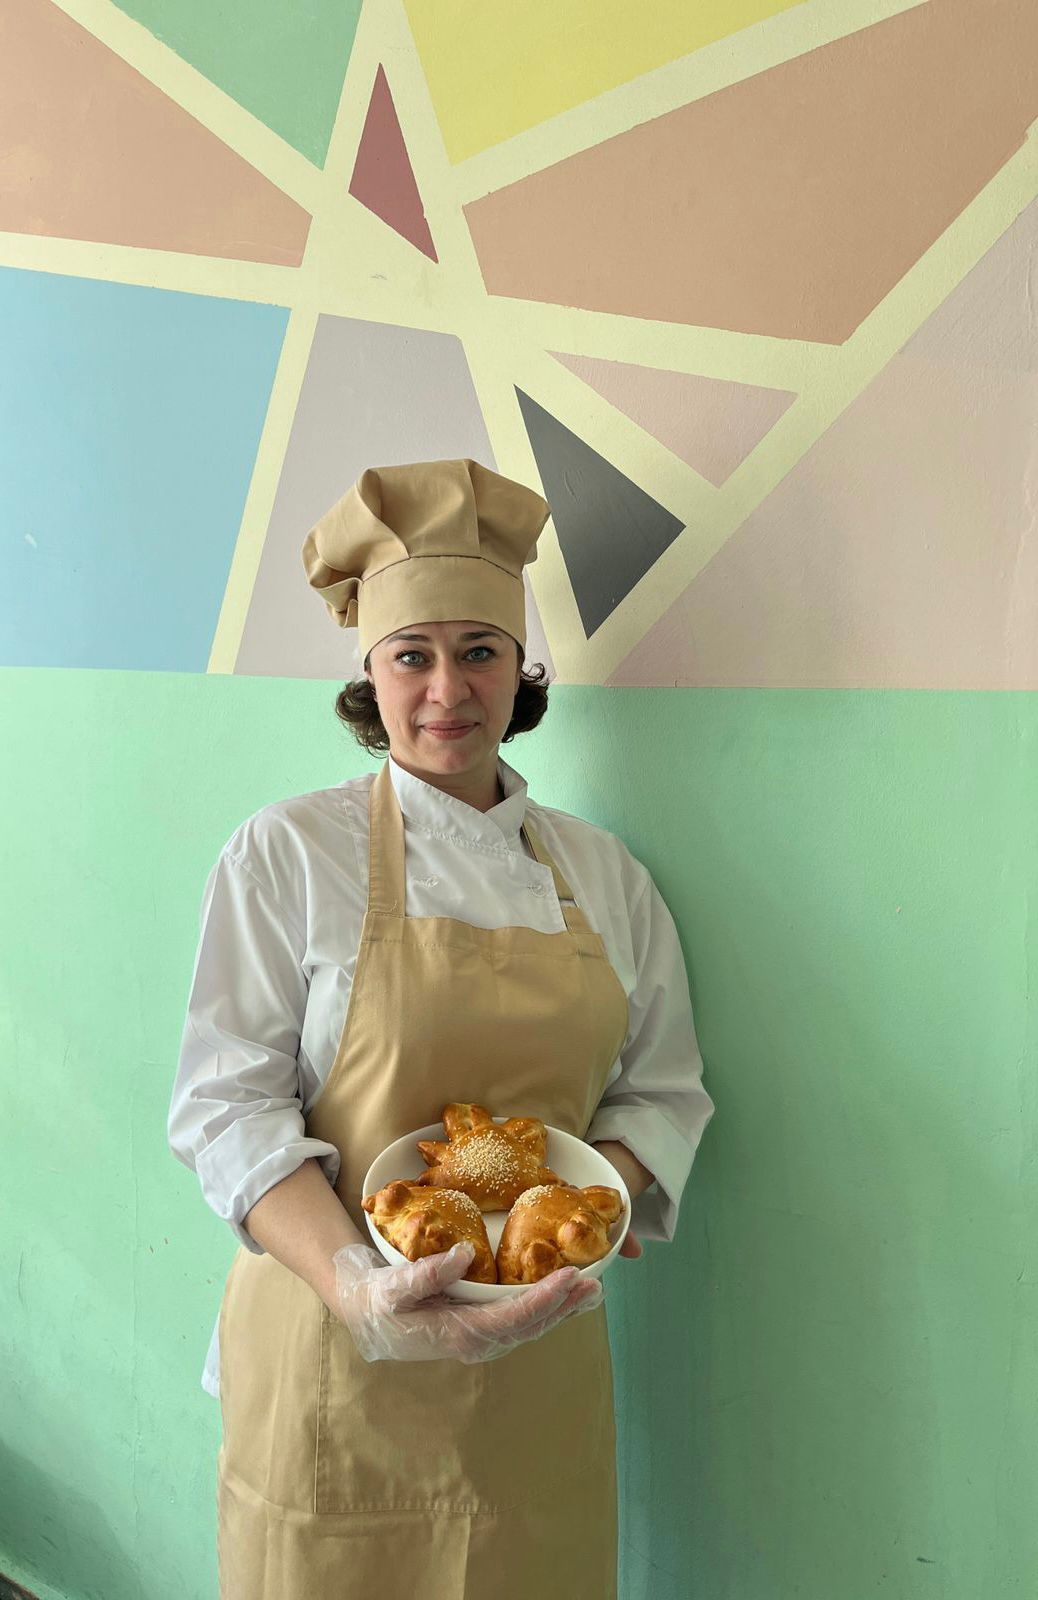 Кулинарный мастер-класс по приготовлению ароматных пирожков прошел в столичной школе  фото